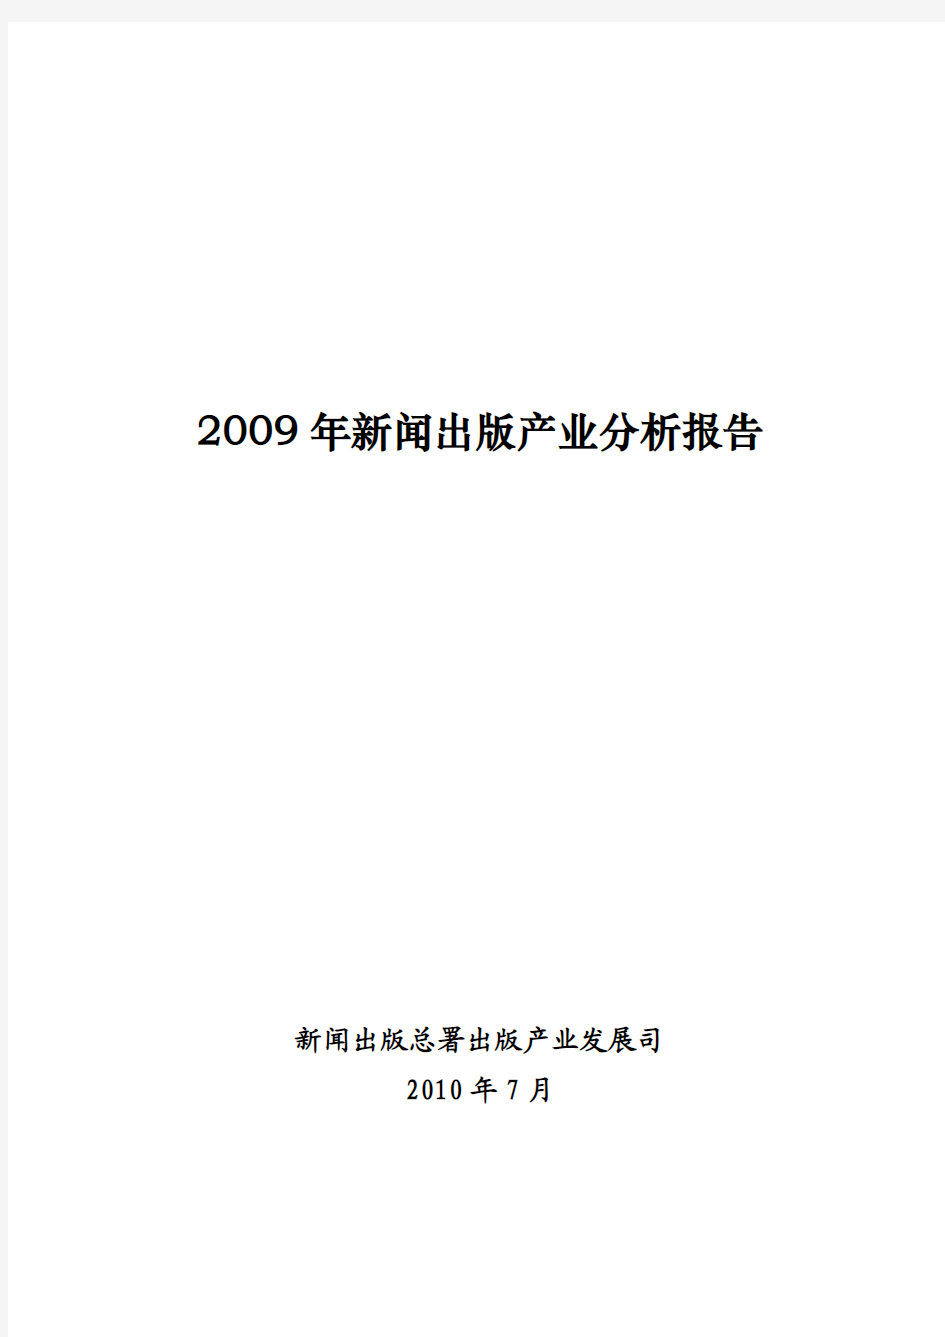 2009年新闻出版产业分析报告(全文)